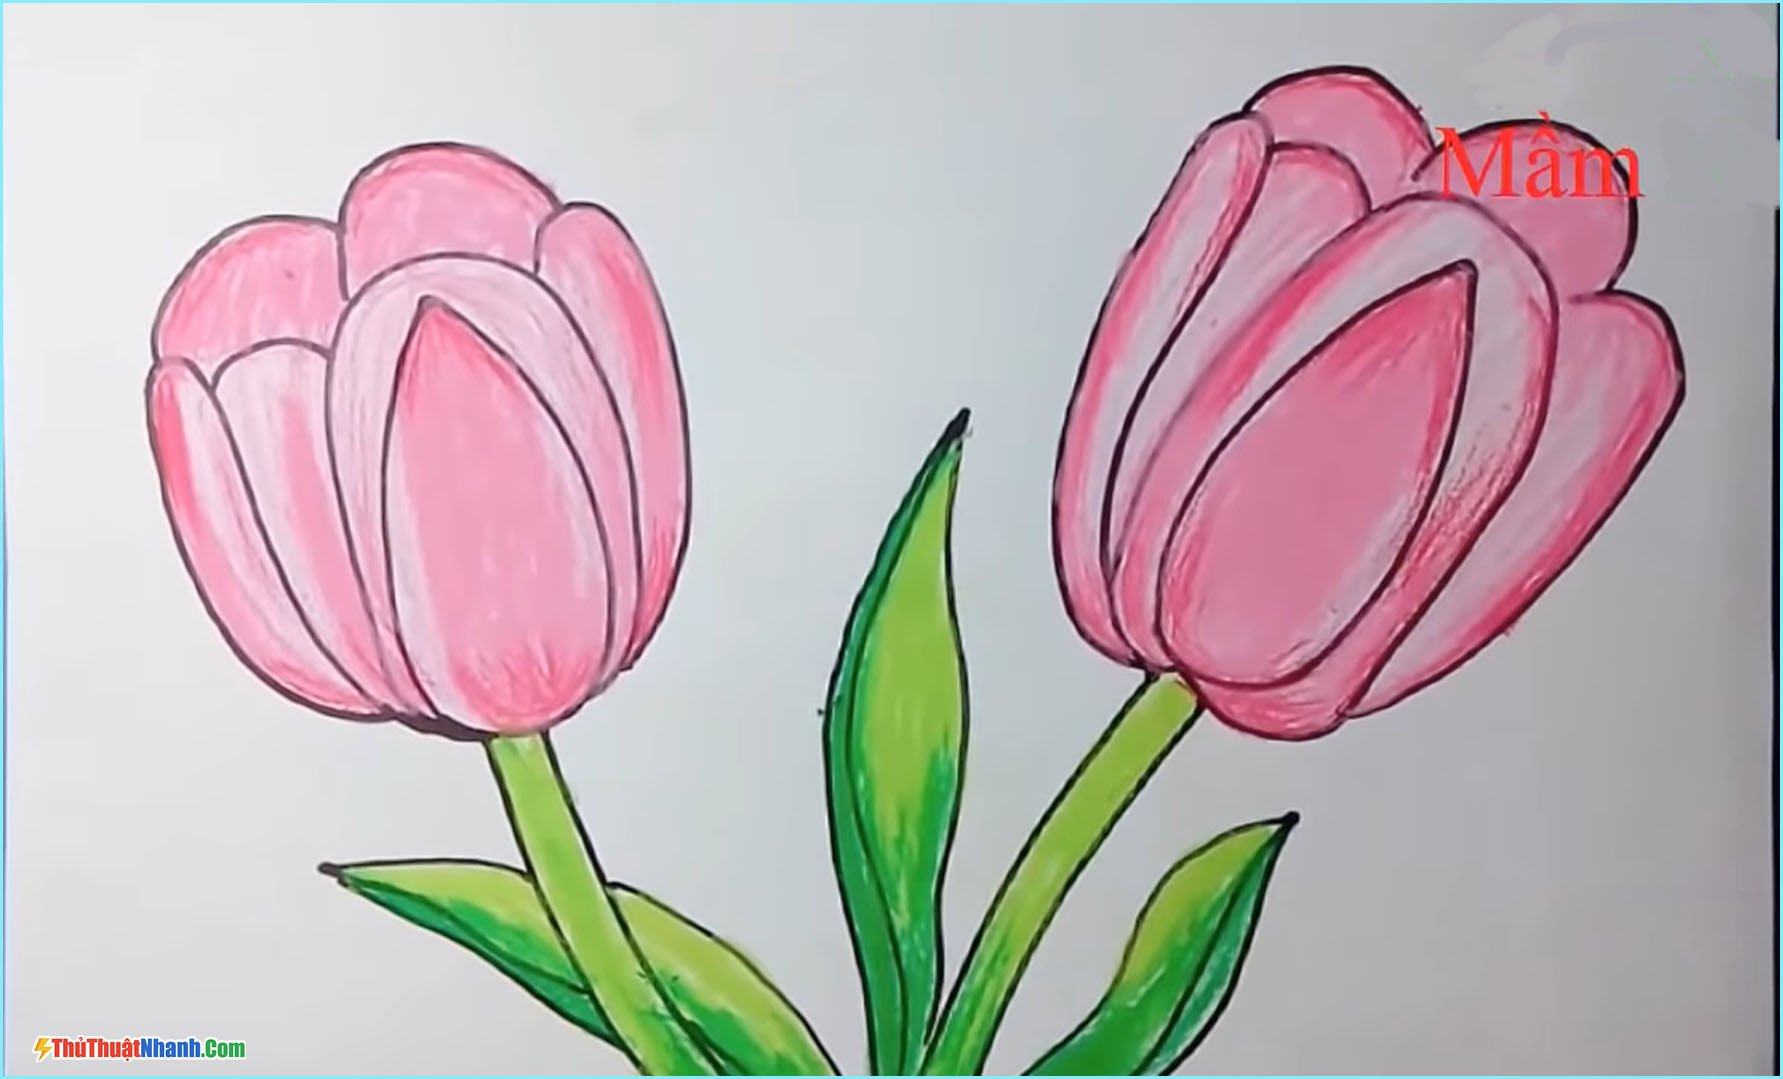 Hướng dẫn vẽ Tranh vẽ hoa sen đơn giản cho người mới bắt đầu